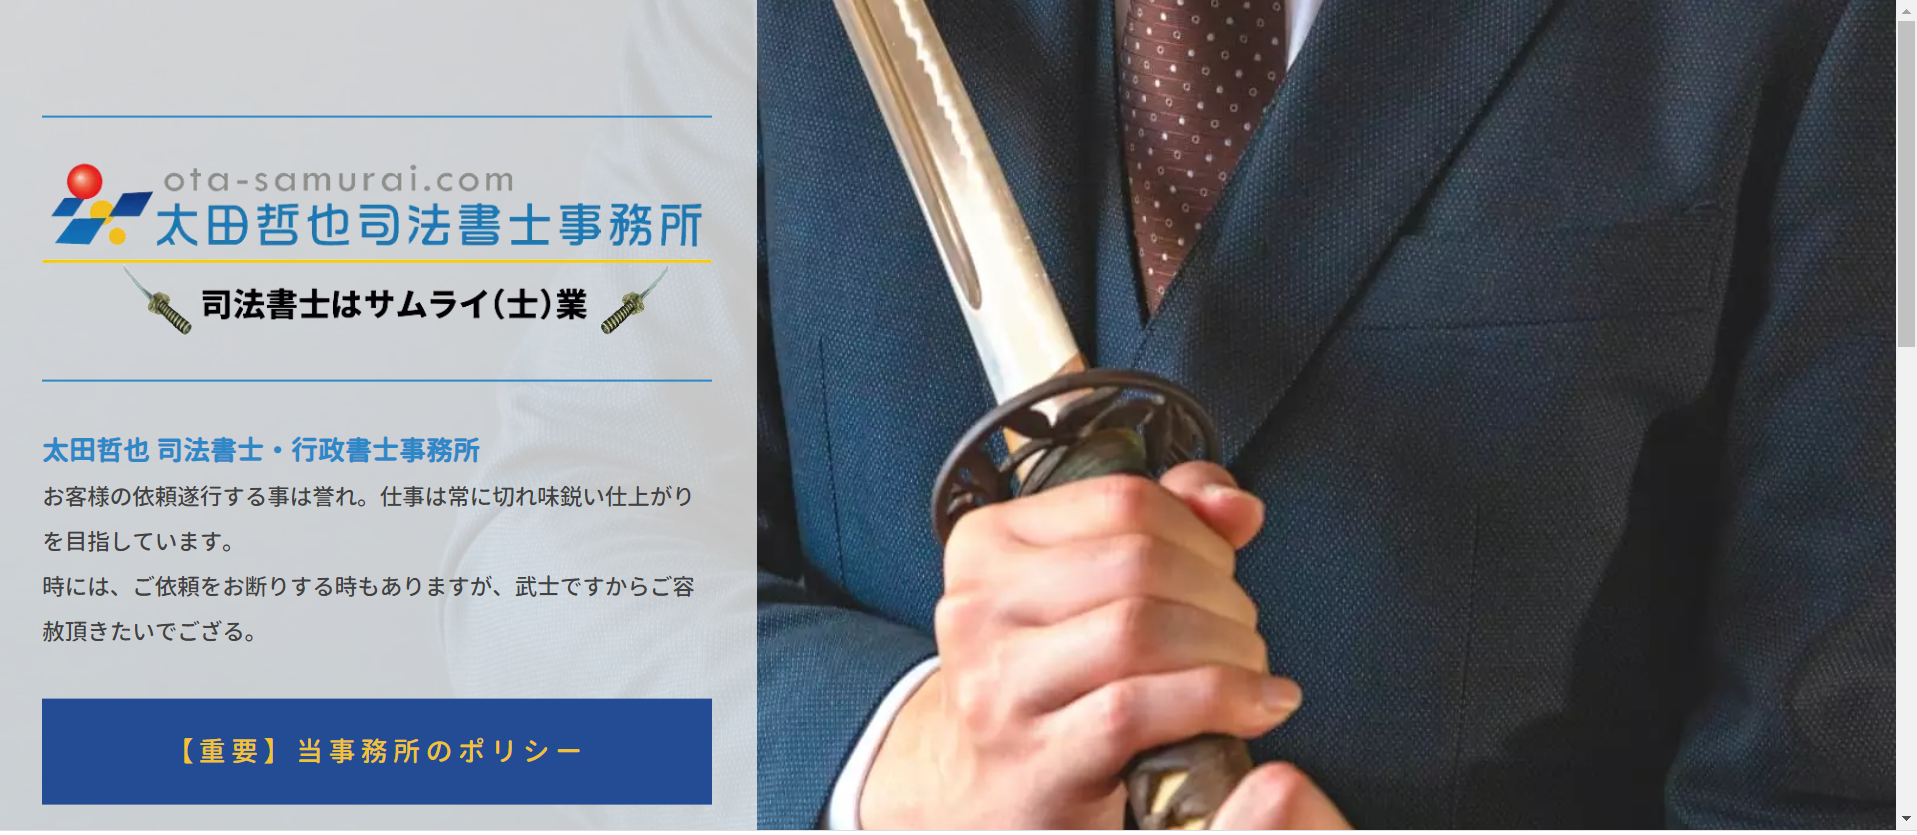 太田哲也司法書士事務所のコーポレートサイト